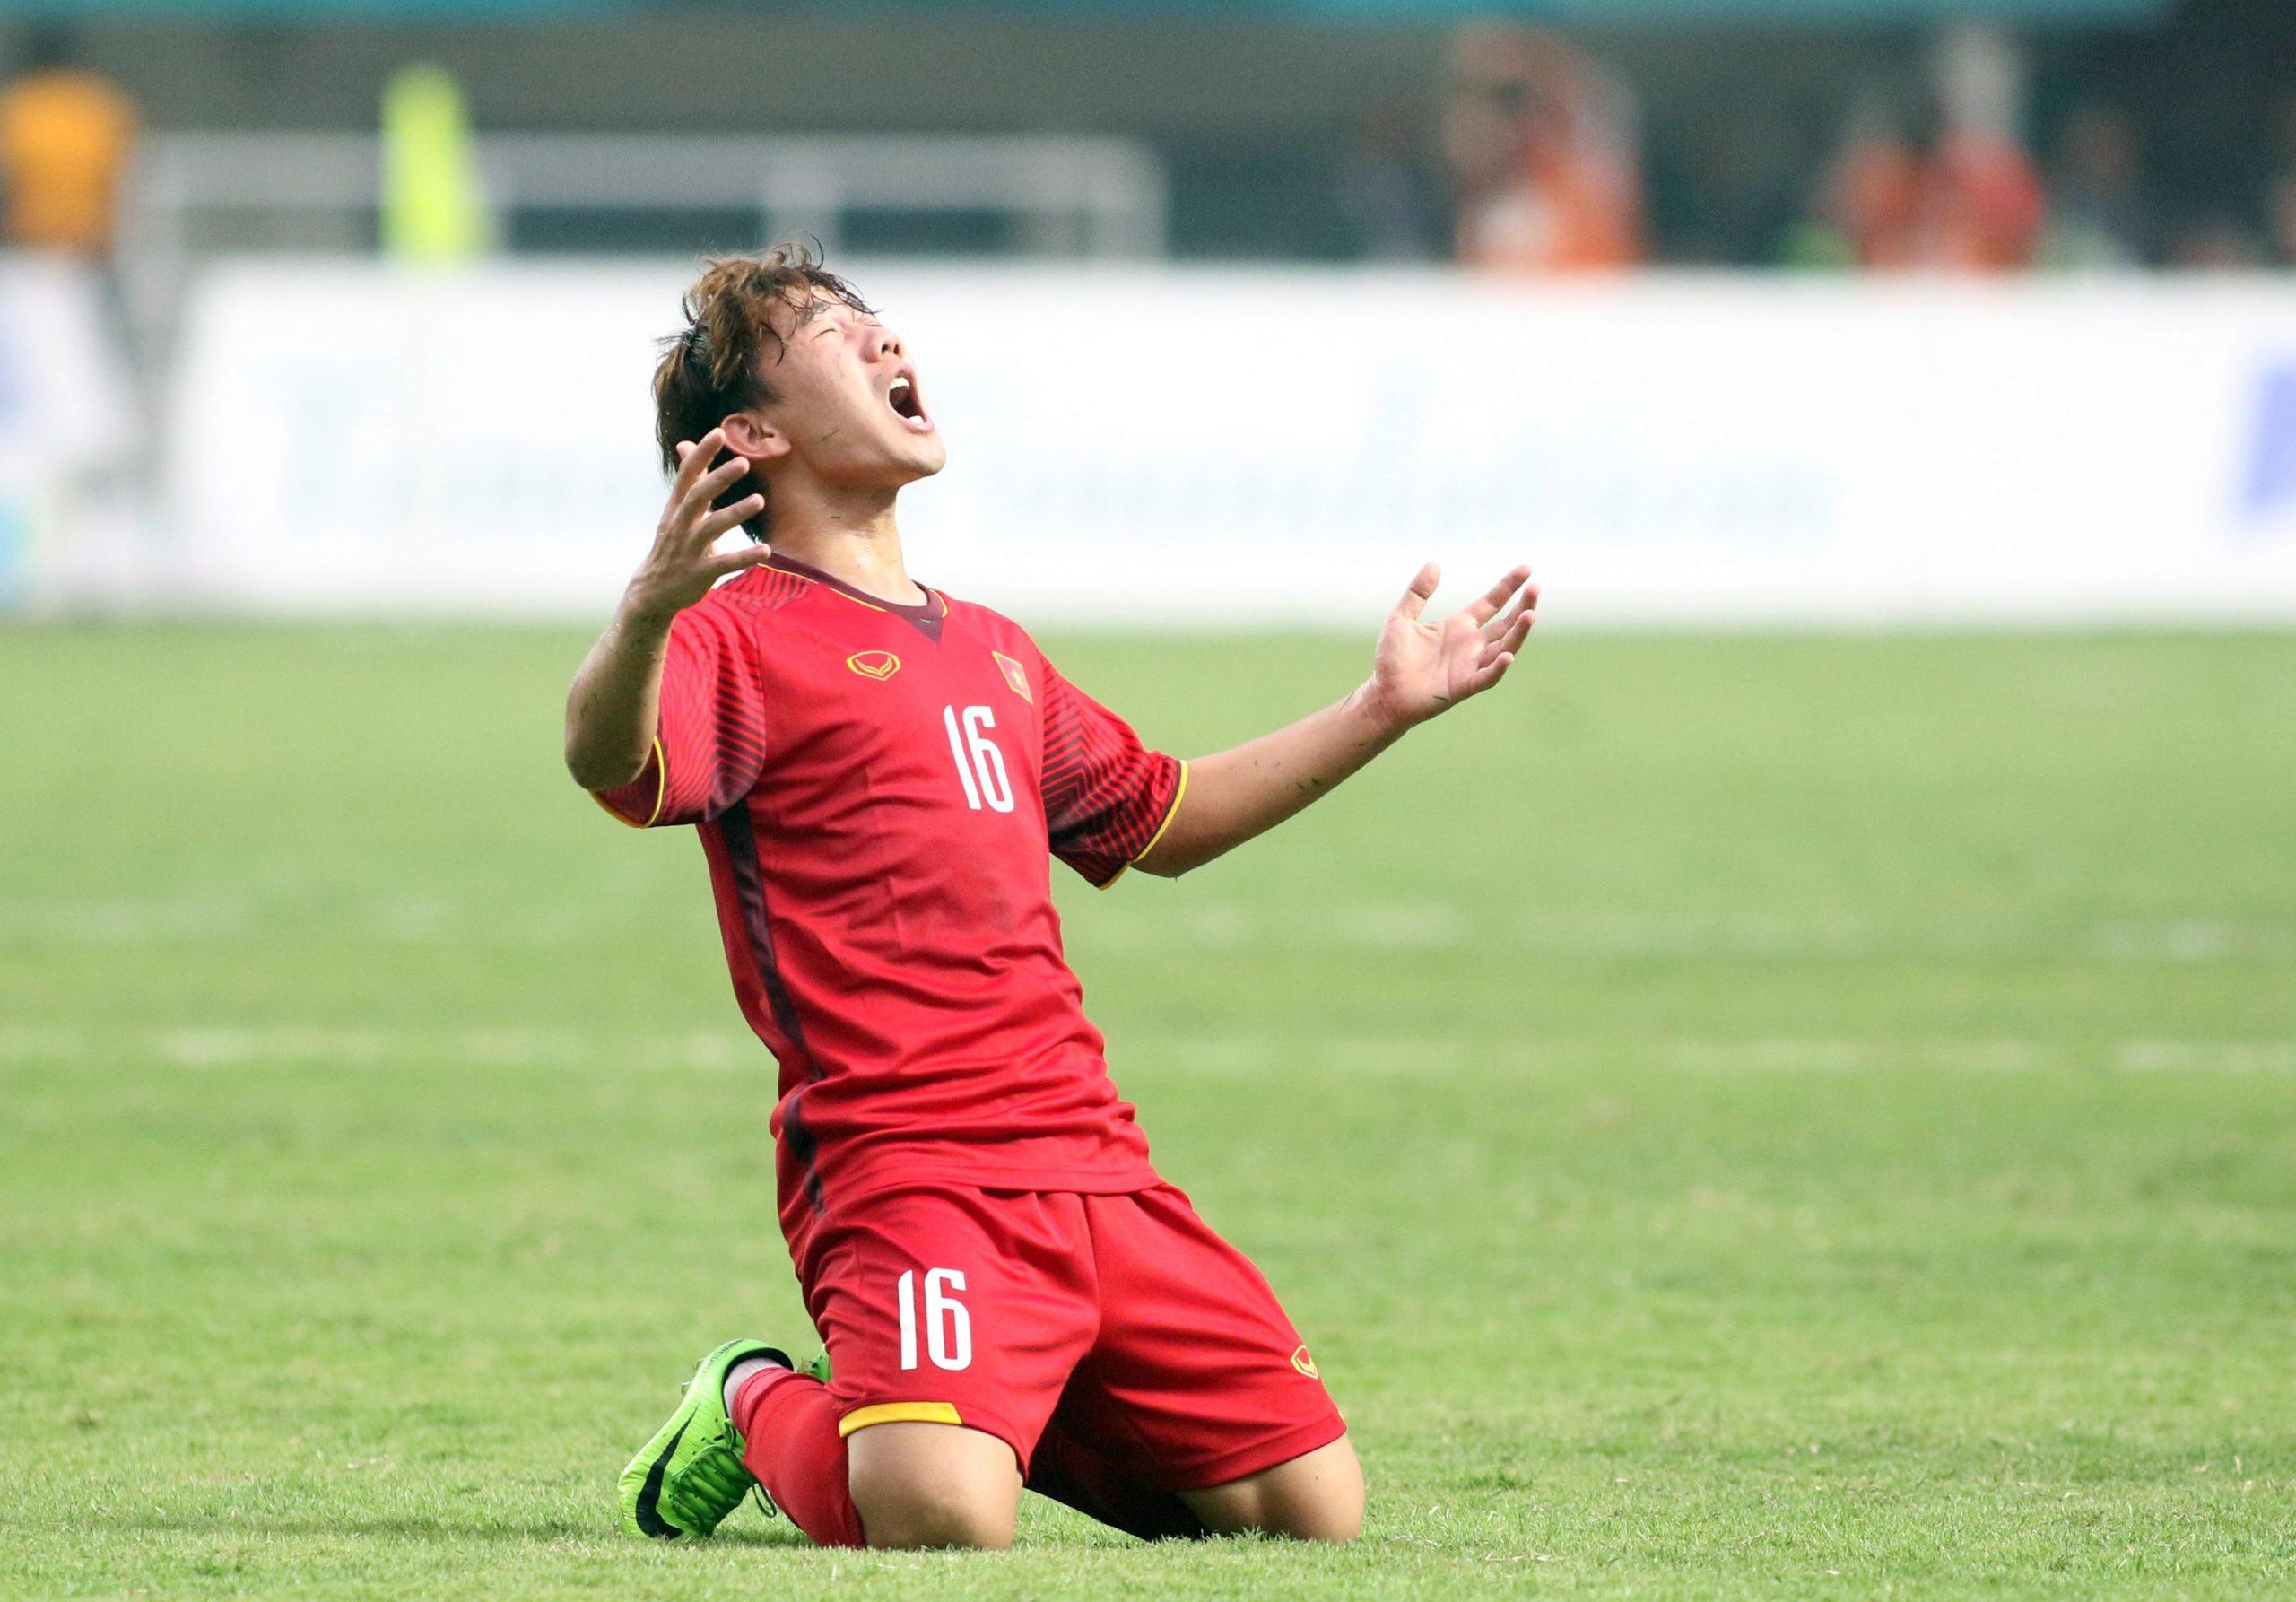 Minh Vương ăn mừng cực kì cảm xúc sau khi ghi bàn tuyệt đẹp vào lưới của Olympic Hàn Quốc ở trận bán kết (Ảnh: Internet)